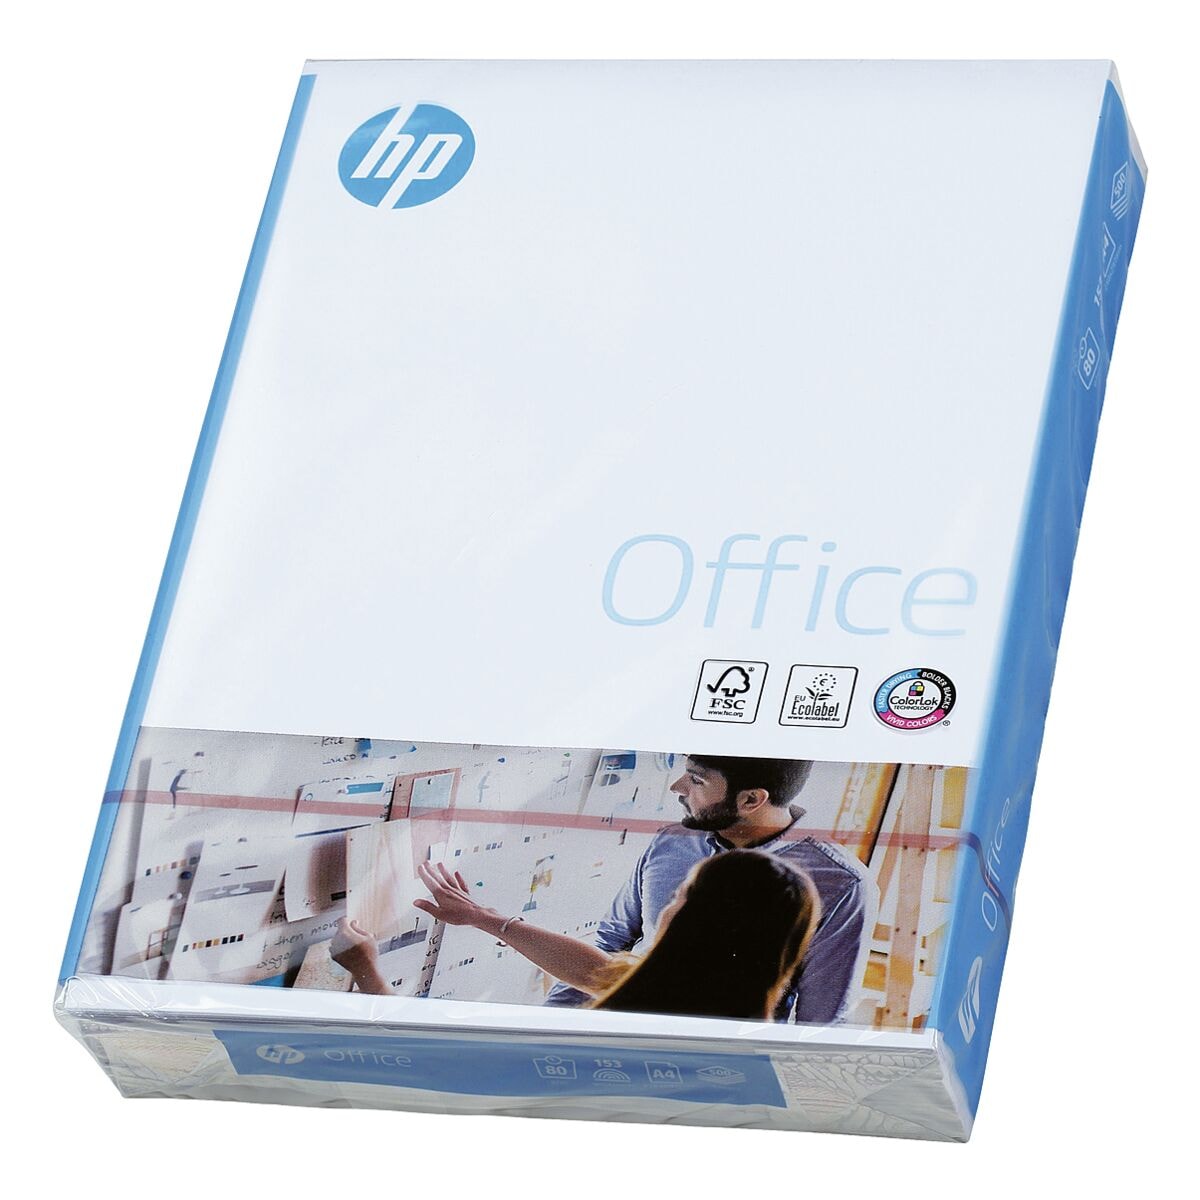 Multifunktionspapier A4 HP Office CHP110 - 500 Blatt gesamt, 80g/qm